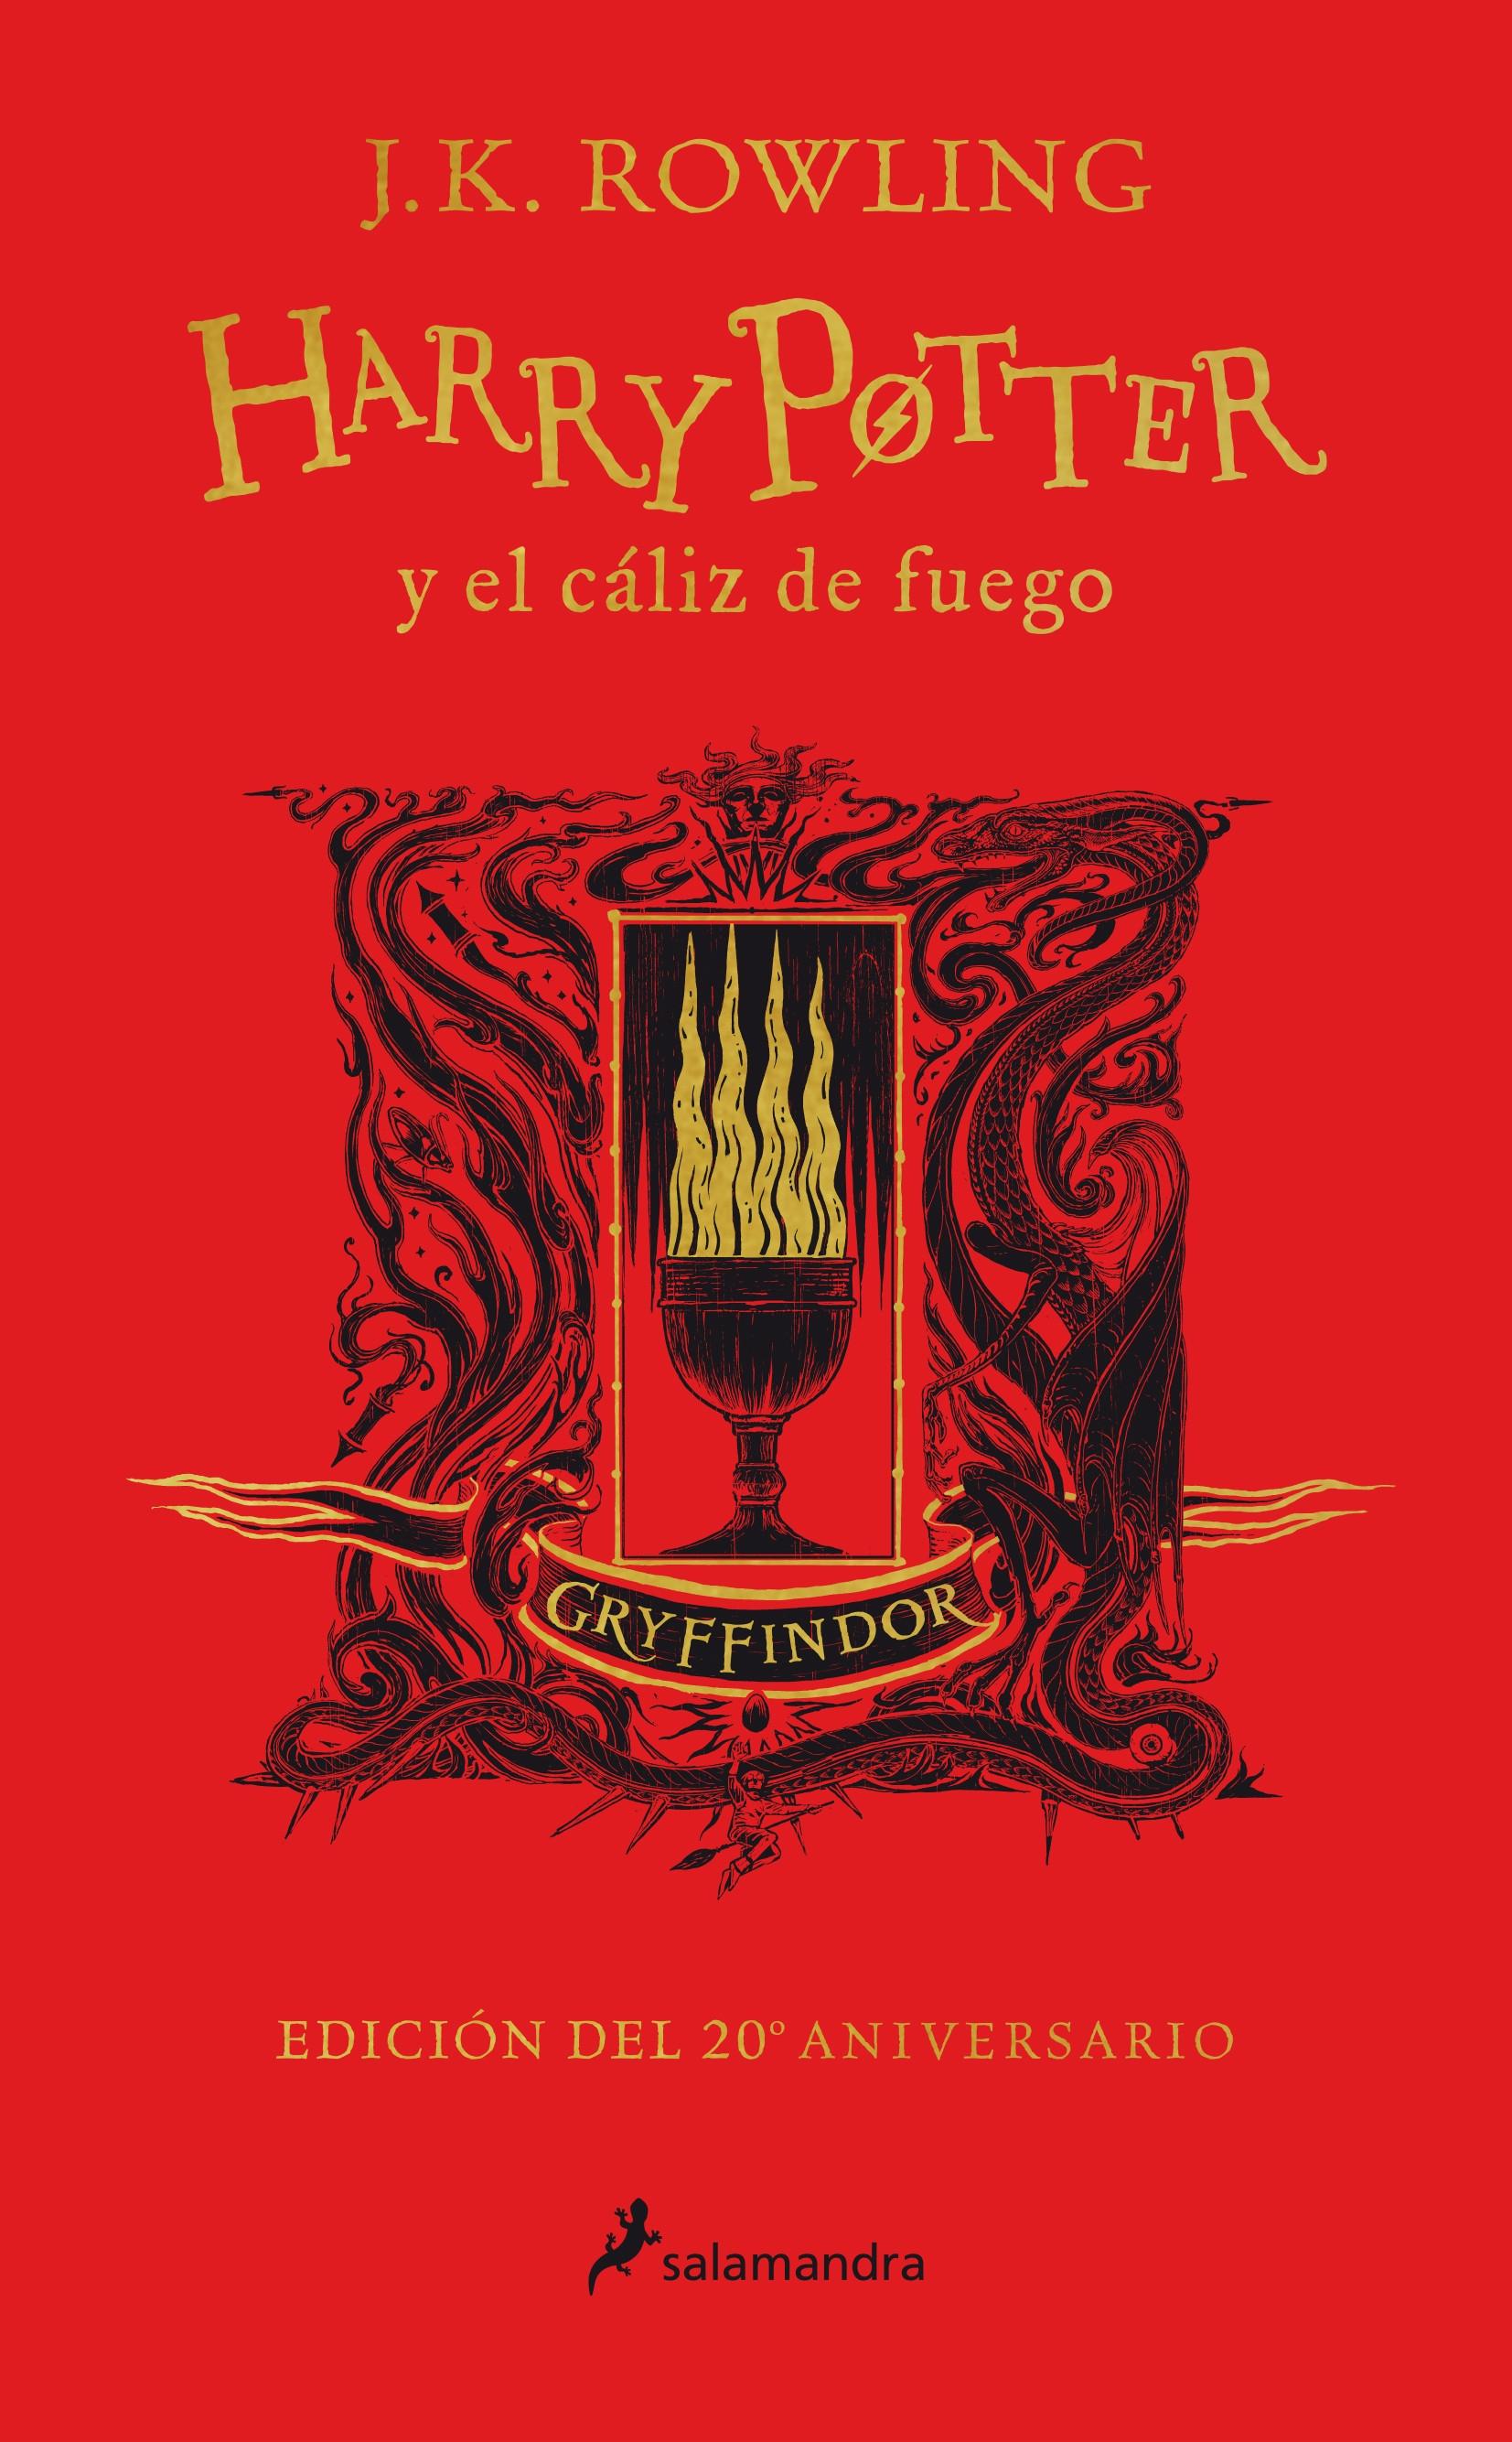 Harry Potter y el cáliz de fuego: Griffindor (Harry Potter - 4) "Valor - Coraje - Audacia (Edición del 20 Aniversario)"